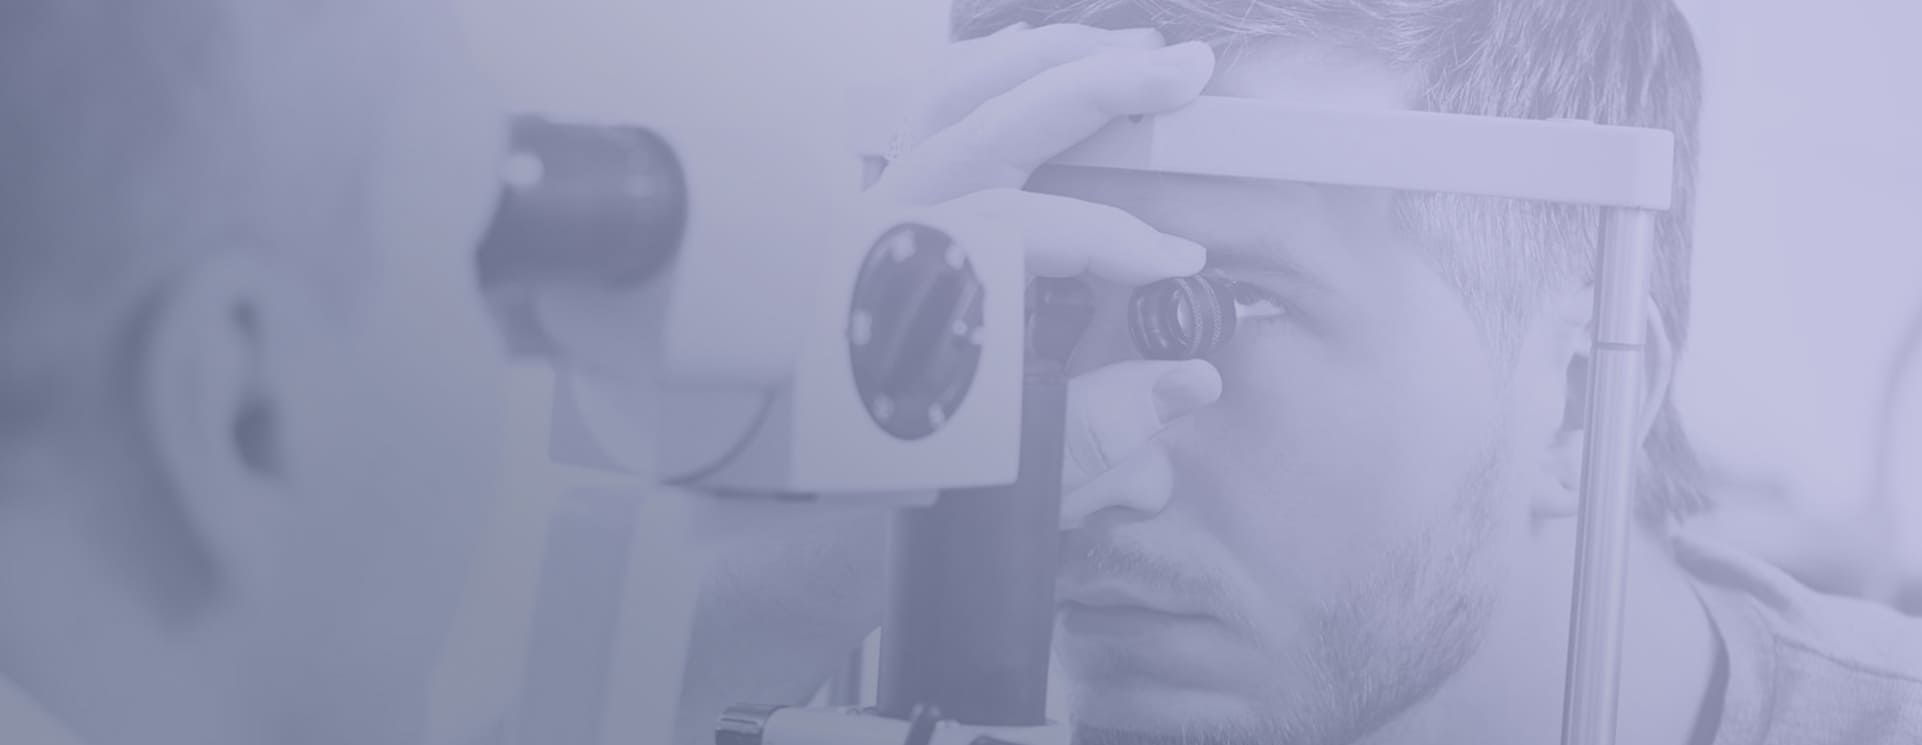 Optyka okularowa – kurs doszkalający z kwalifikacji: MEP.03 Wykonywanie i naprawa pomocy wzrokowych – kurs online